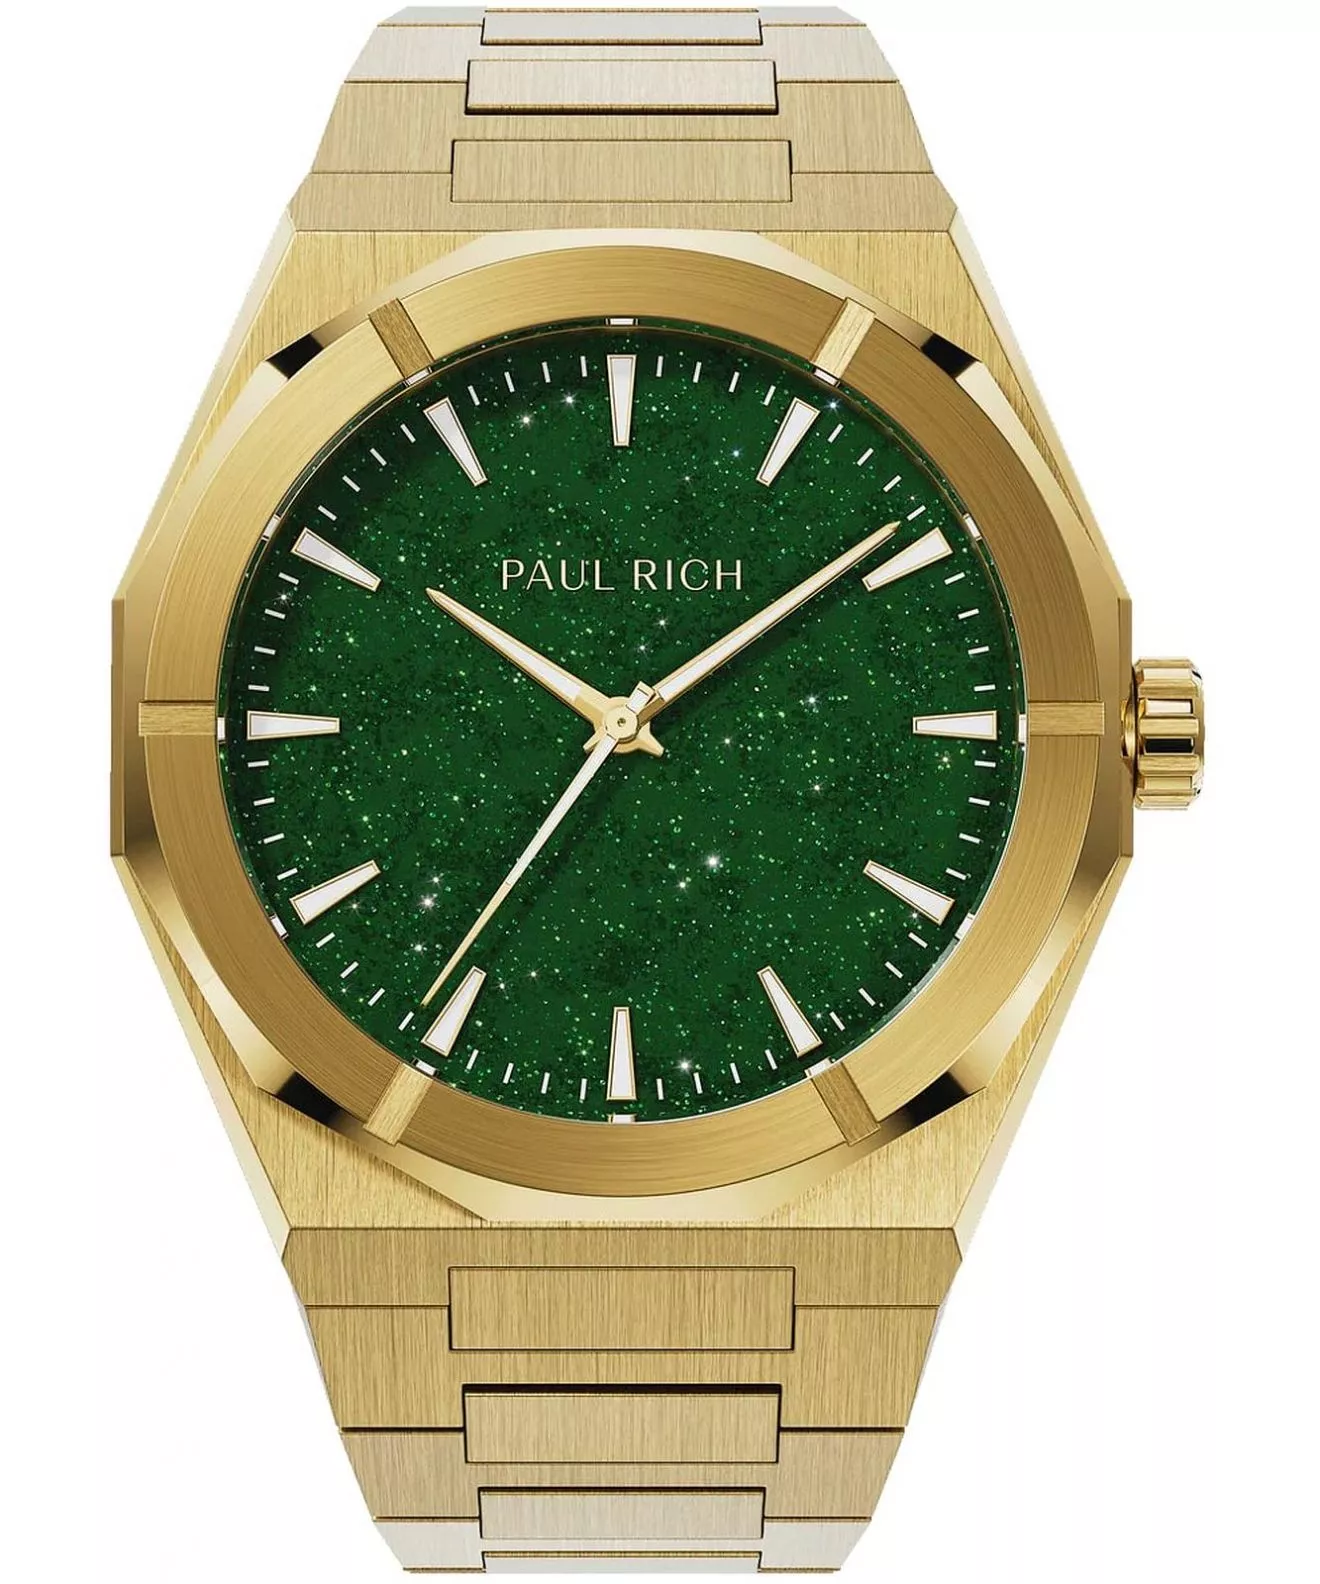 Paul Rich Star Dust II Gold Green watch 766236337012